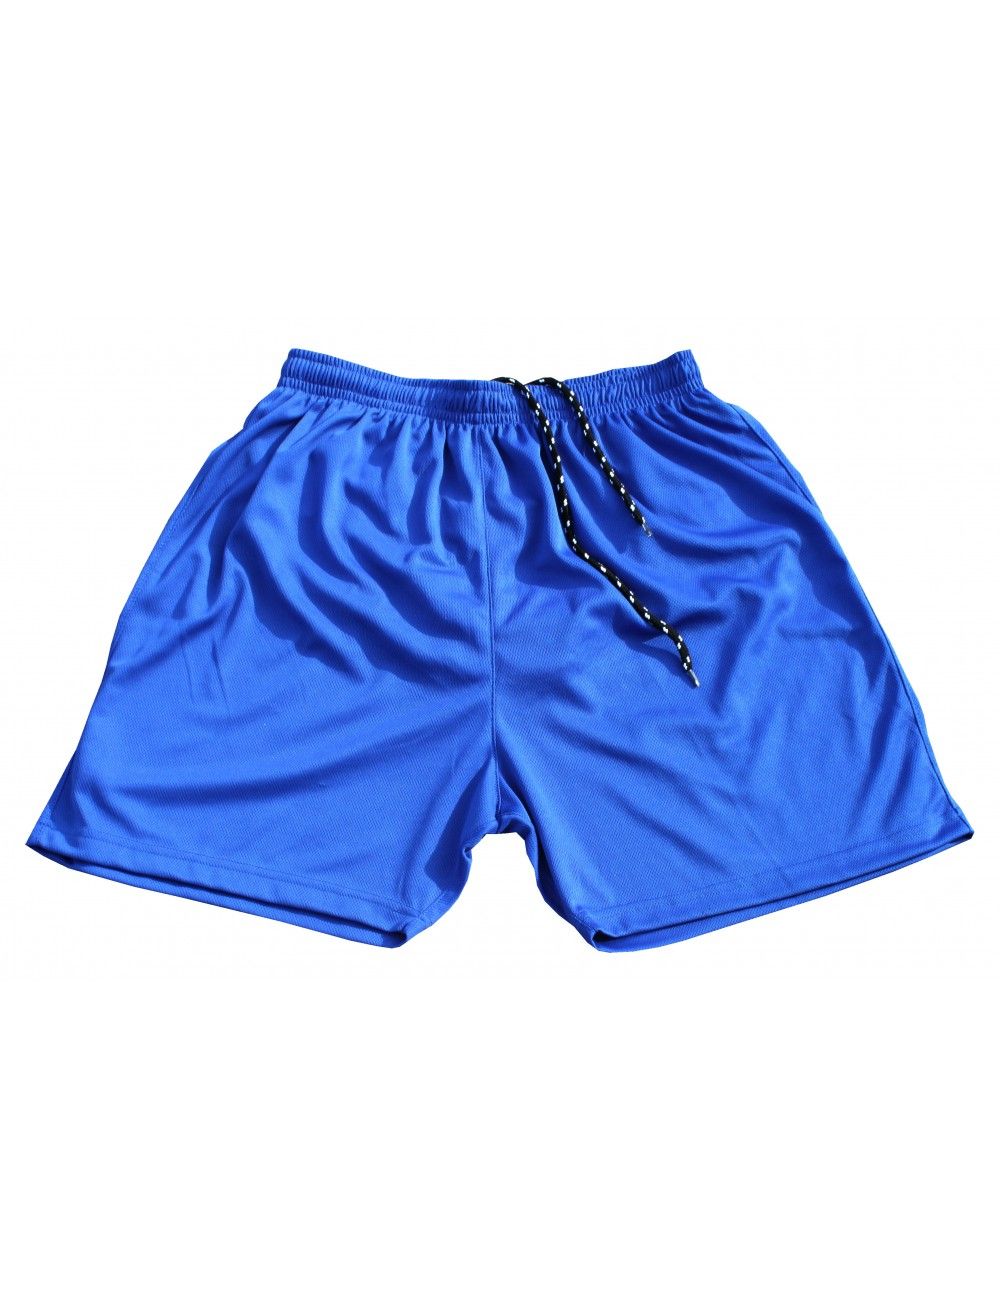 Fußball Hosen / Short mit Innenslip für Kinder und Erwachsene Farbe blau - 3